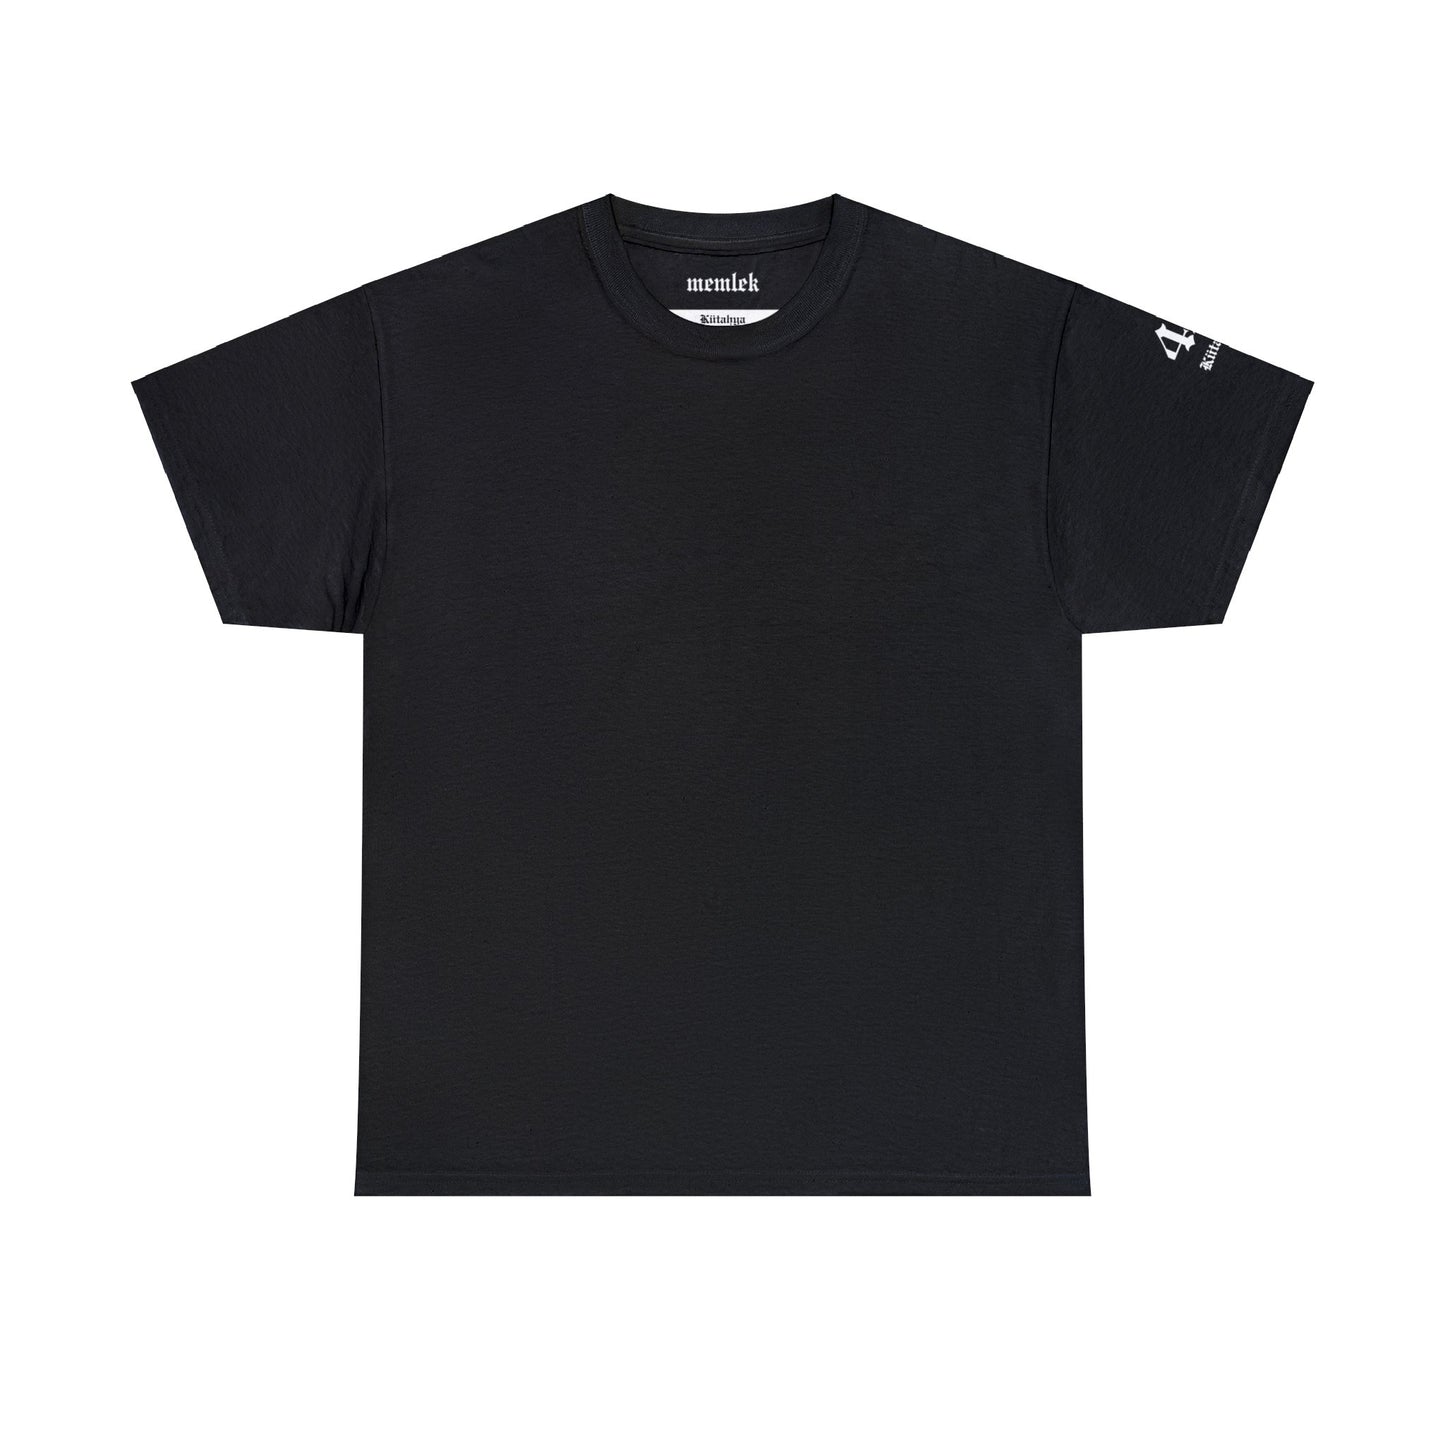 İlçem - 43 Kütahya - T-Shirt - Back Print - Black